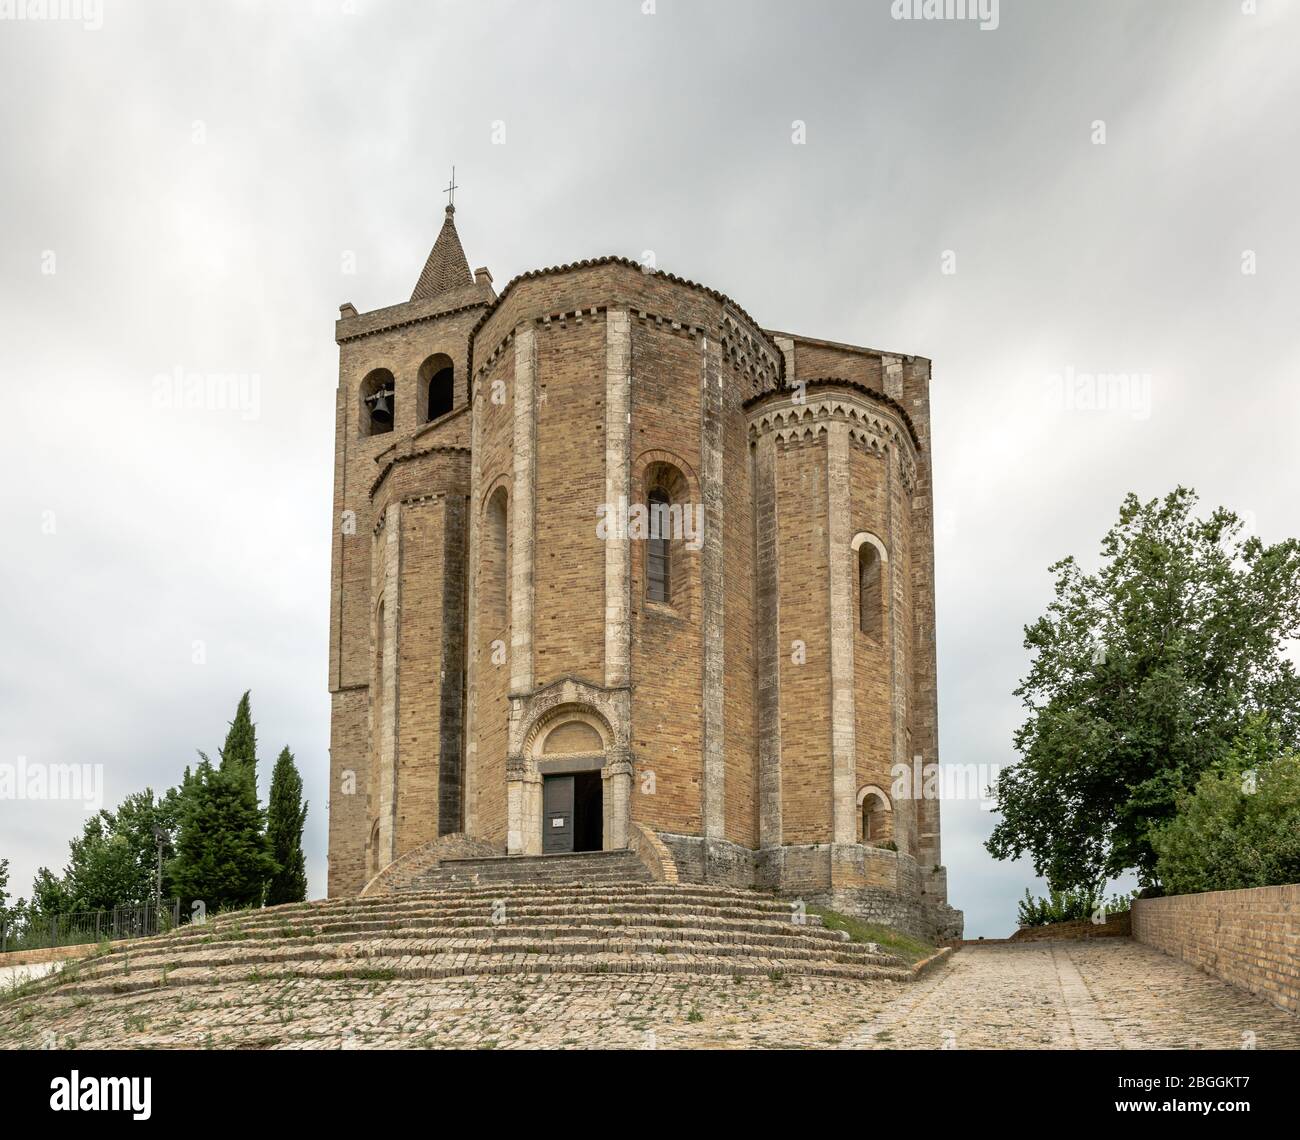 Church of Santa Maria della Rocca - XIV century - Offida village, Ascoli Piceno district - Italy Stock Photo